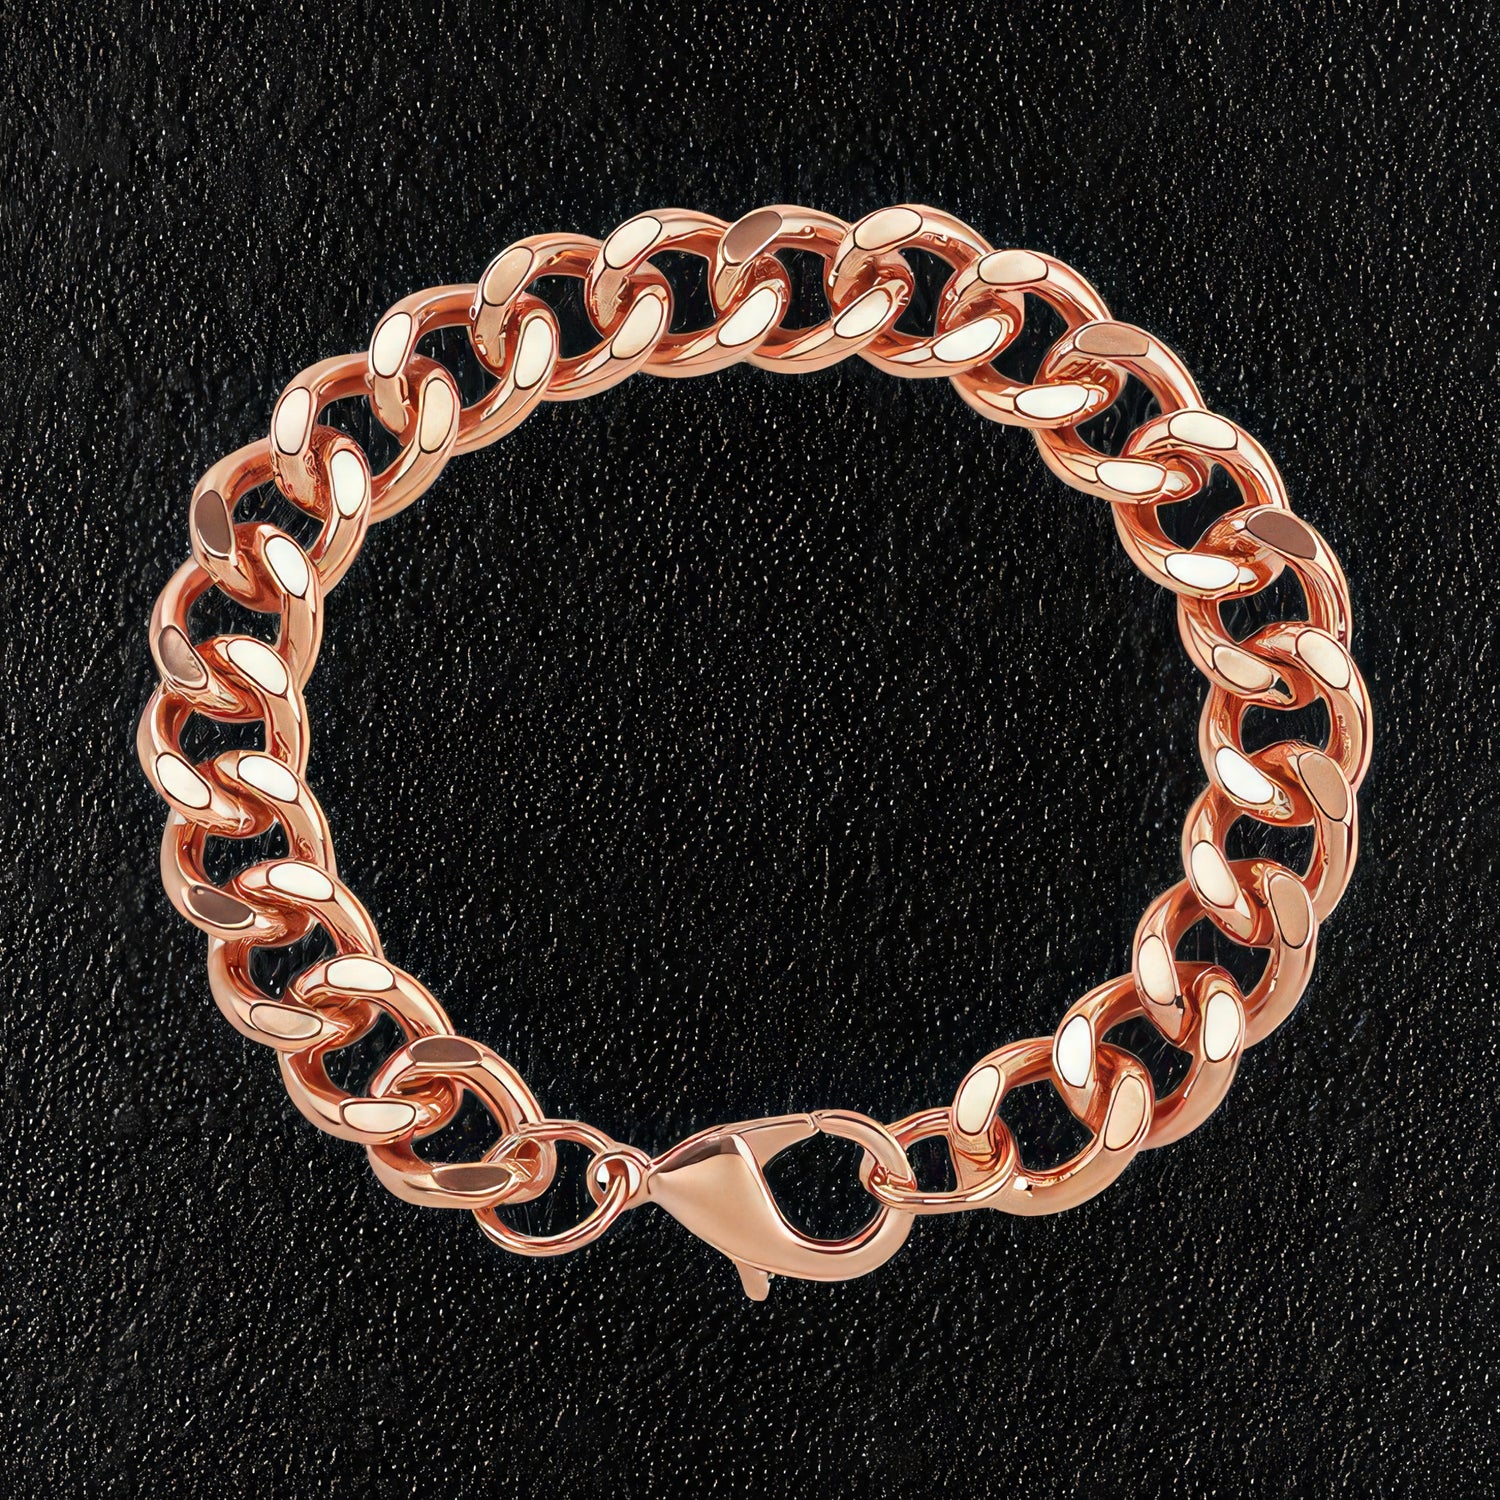 Pure Copper Cuban Link Bracelet